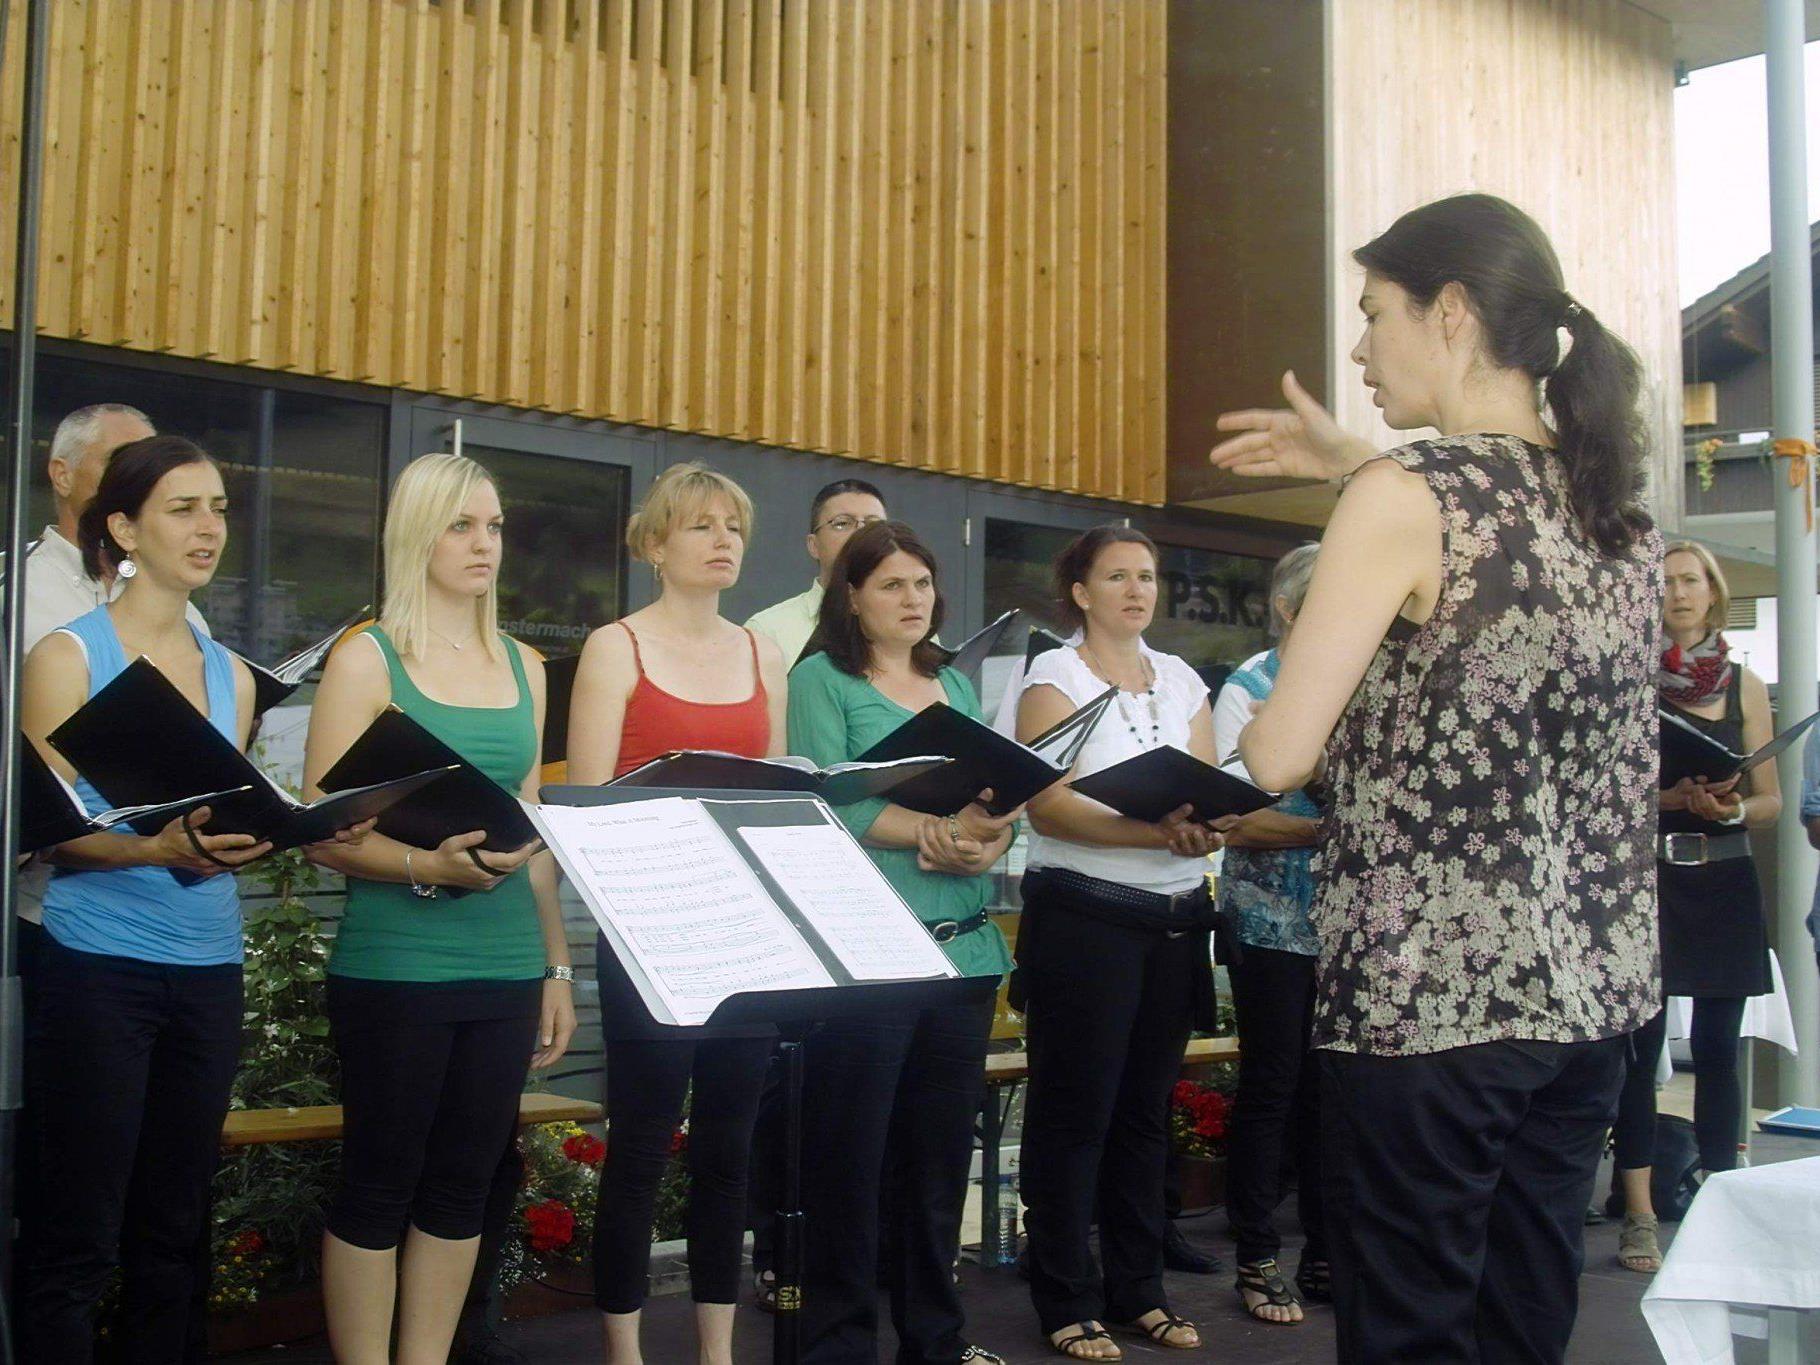 Der Chor „Sonnasita“ singt unter der Leitung von Alice Dobler.